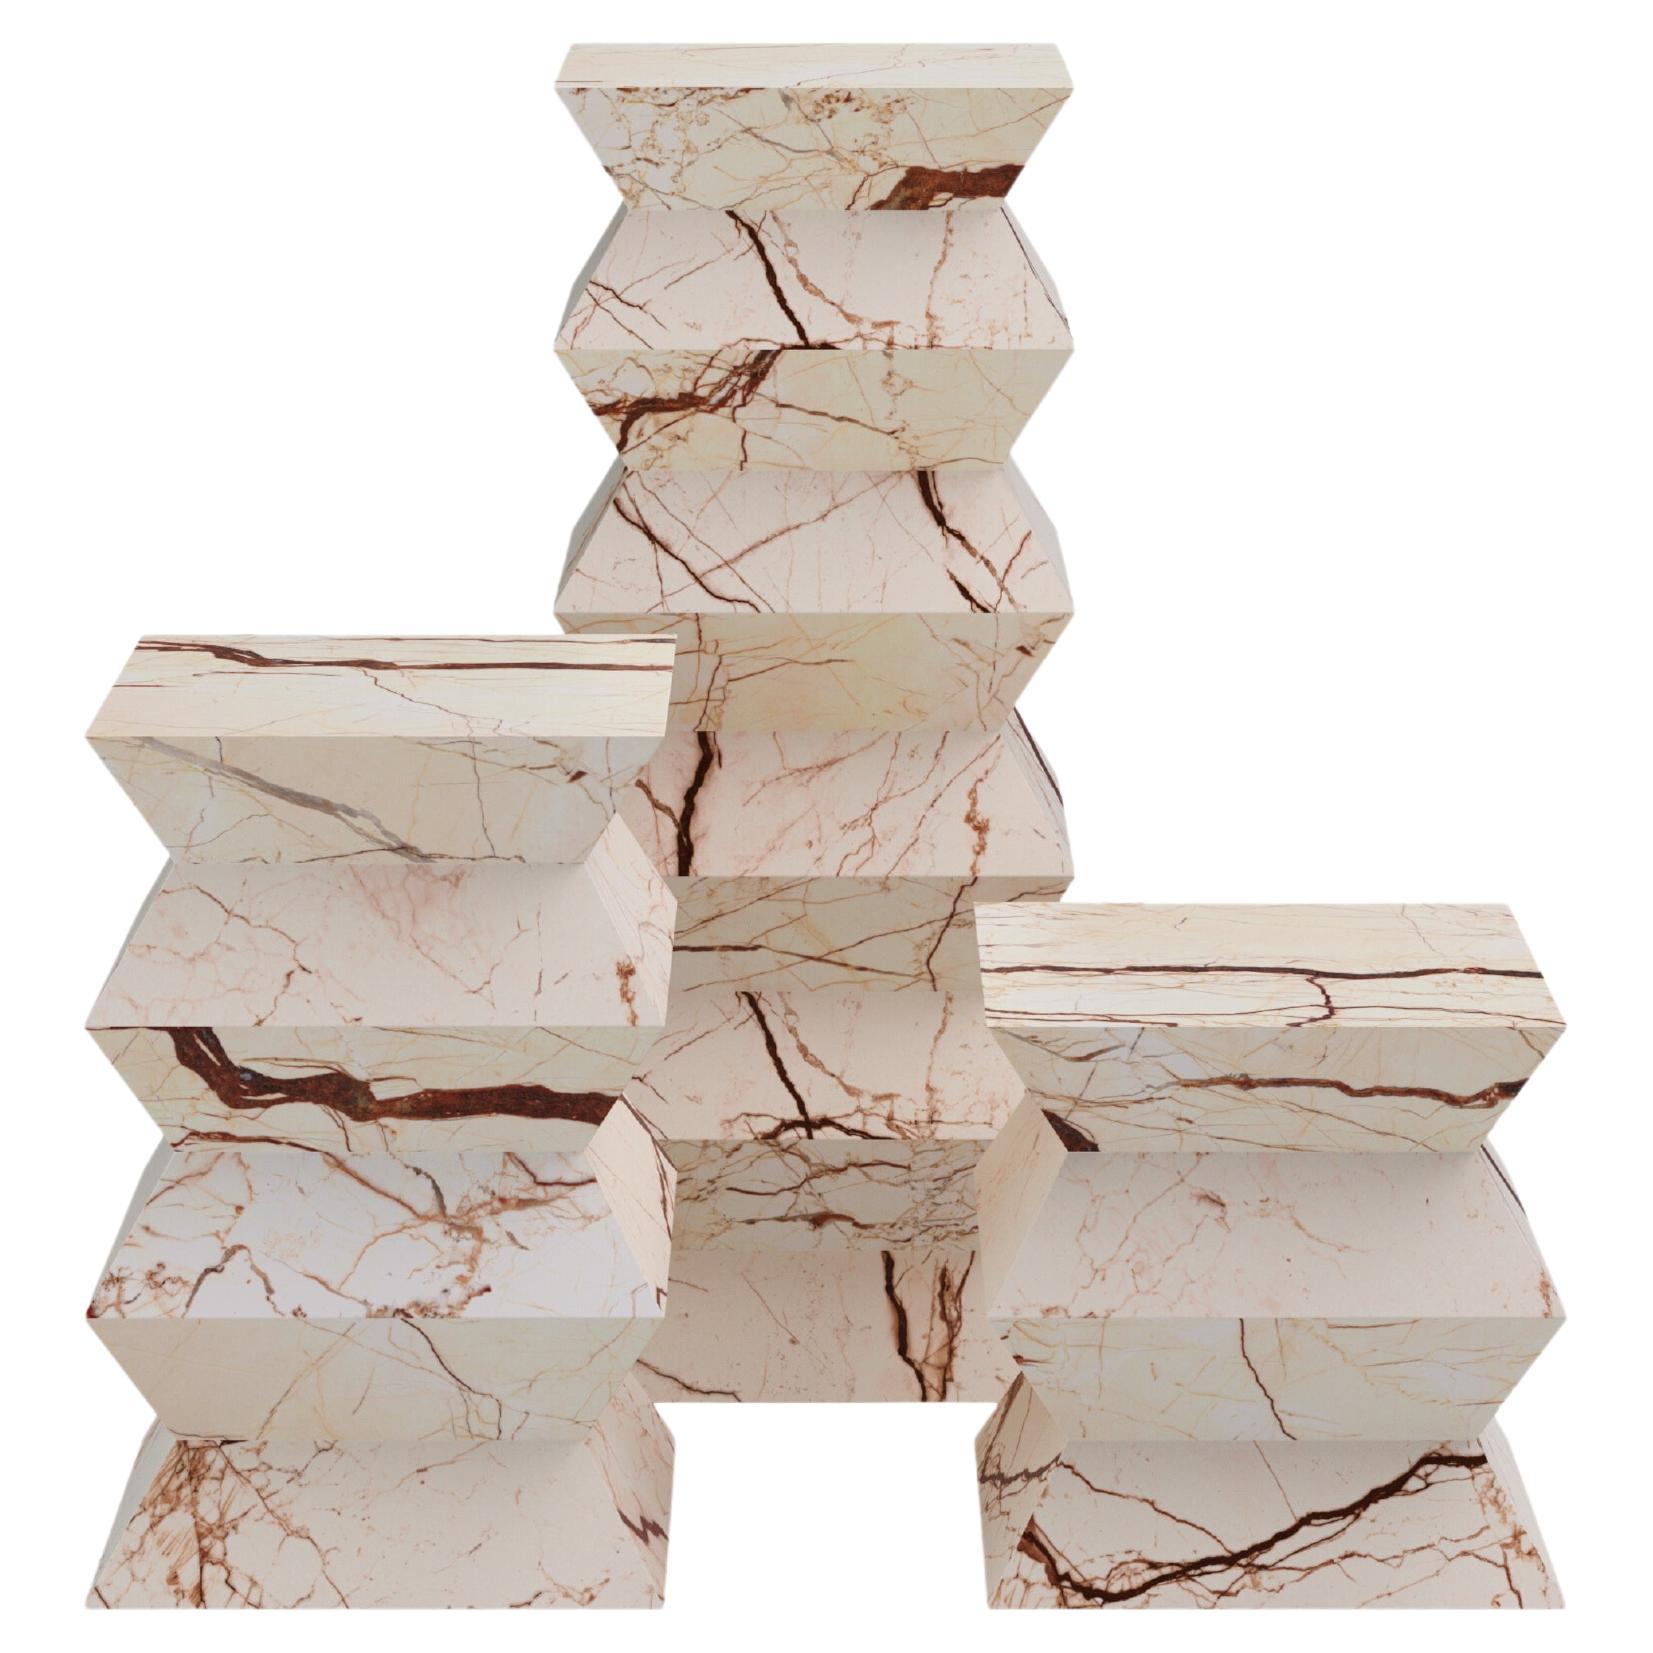 FORM(LA) Grinza Pedestal 16"L x 16"W x 40"H Sofita Beige Marble